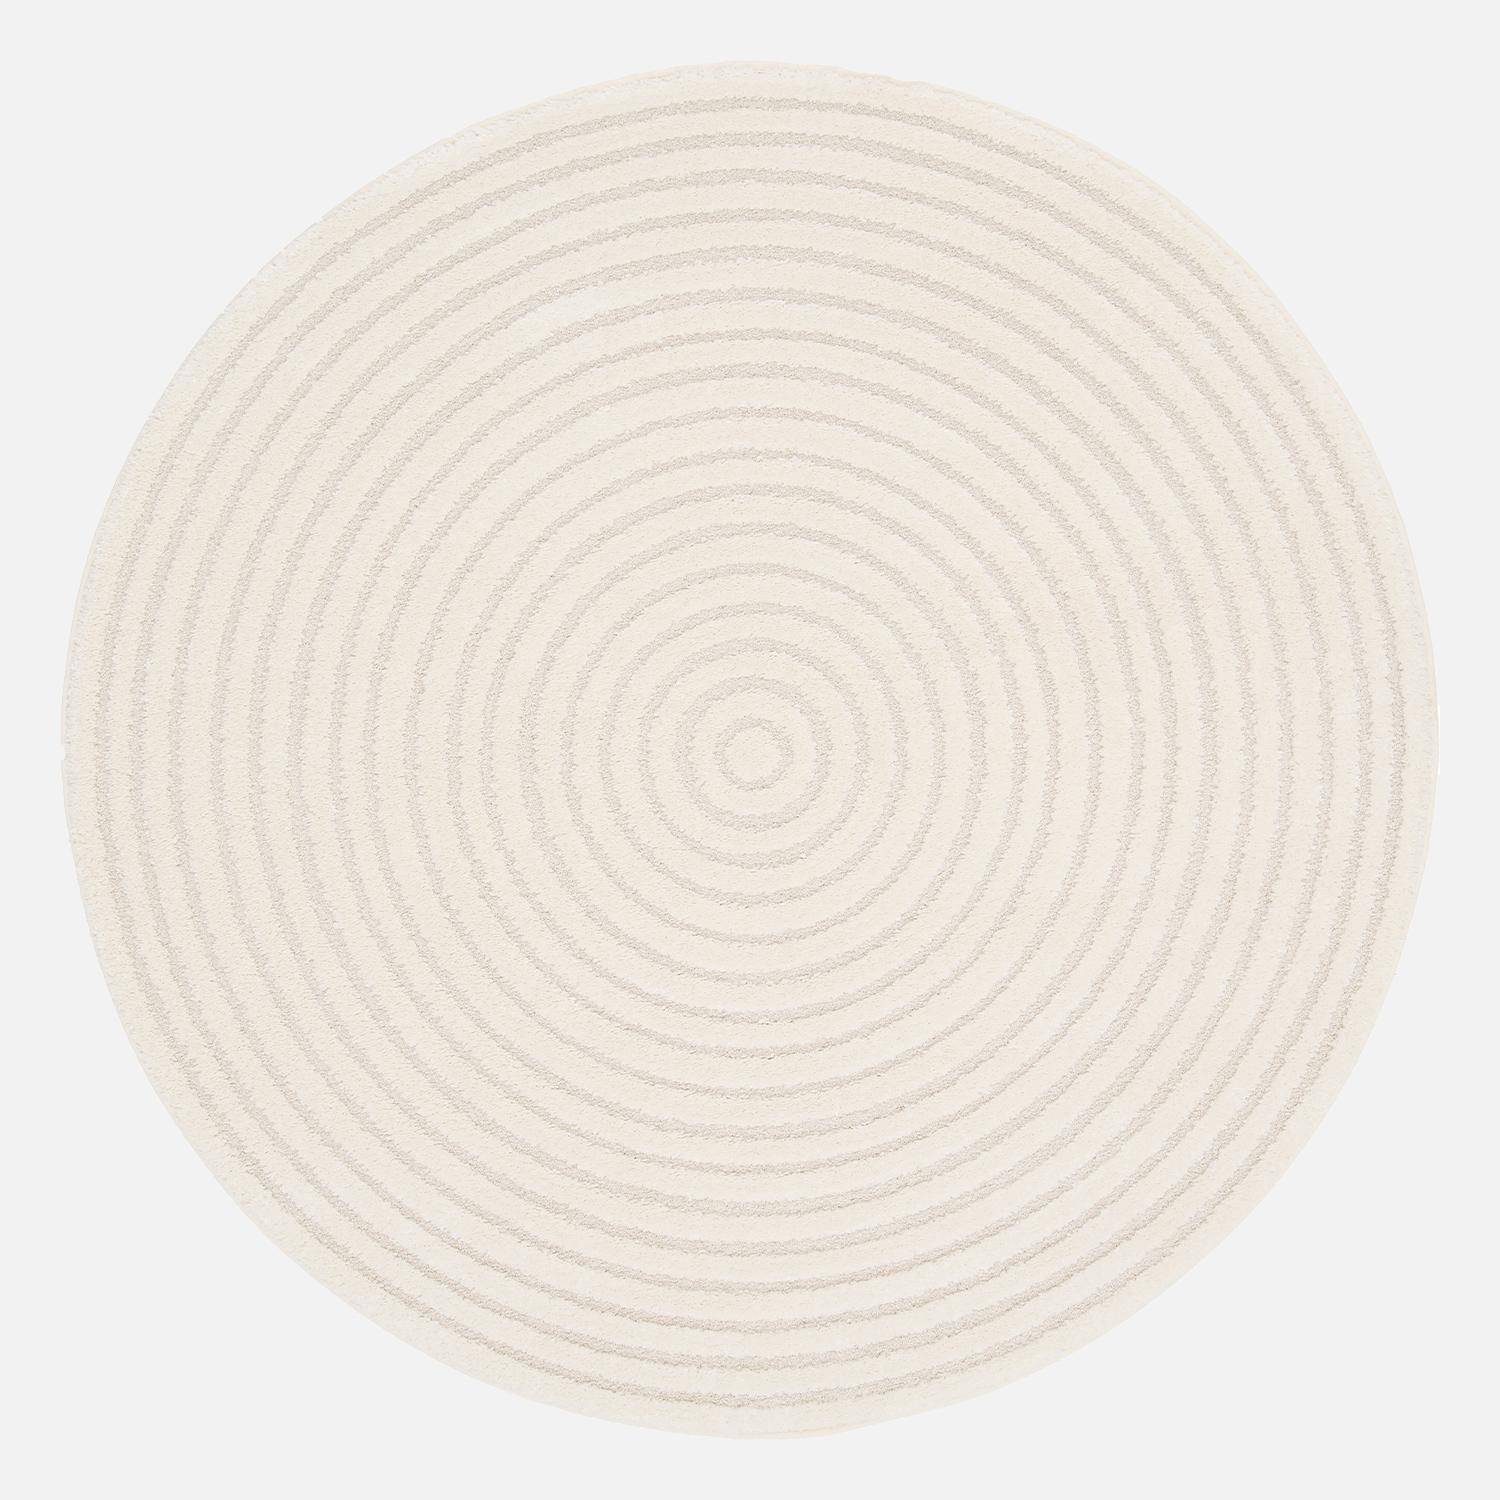 Interior carpet with raised circles in cream 160x160cm, Blair, Ø160 cm Photo1